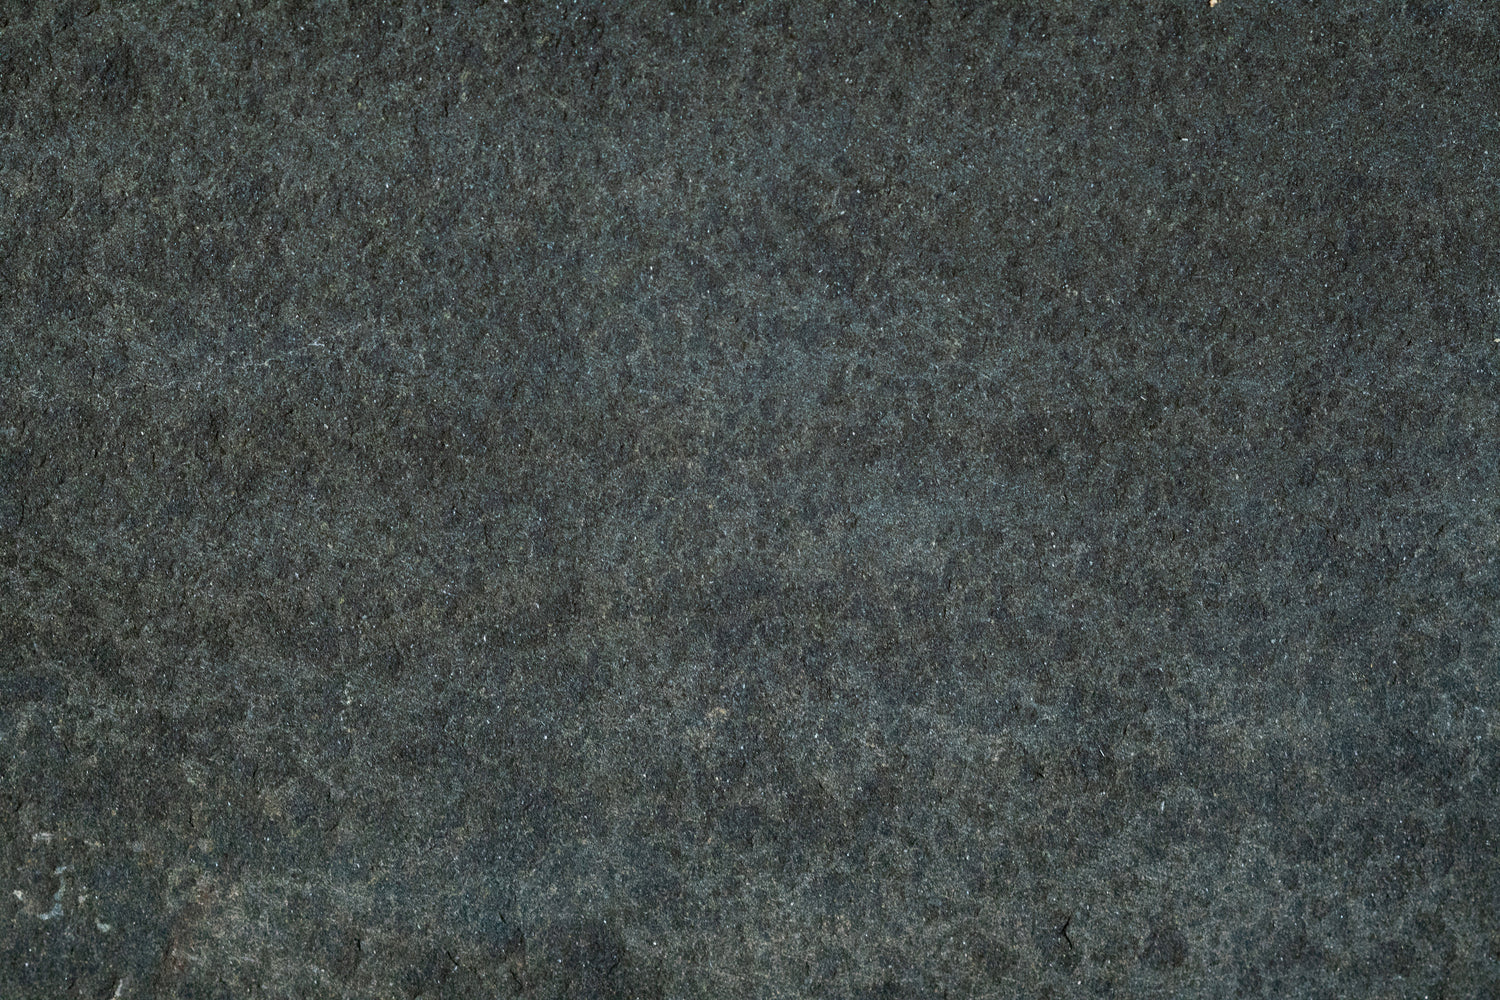 Full Tile Sample - Basalt Dark Basalt Tile - 24" x 24" x 3/4" Flamed & Waterjet